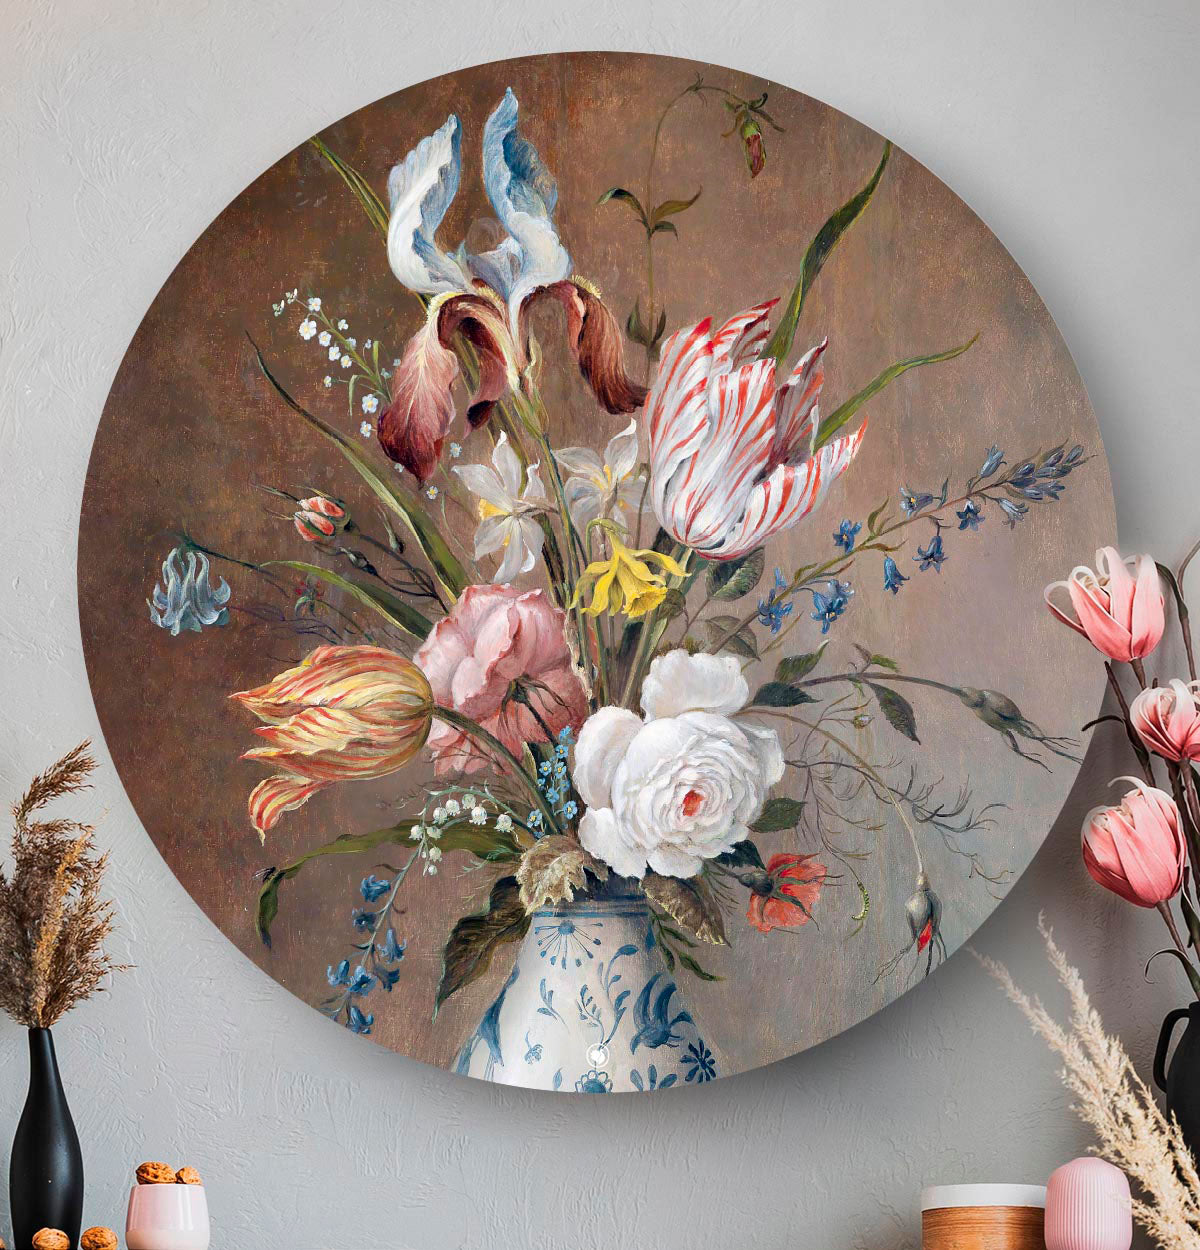 Wandcirkel met bloemen in een porseleinen vaas tegen een lichte muur